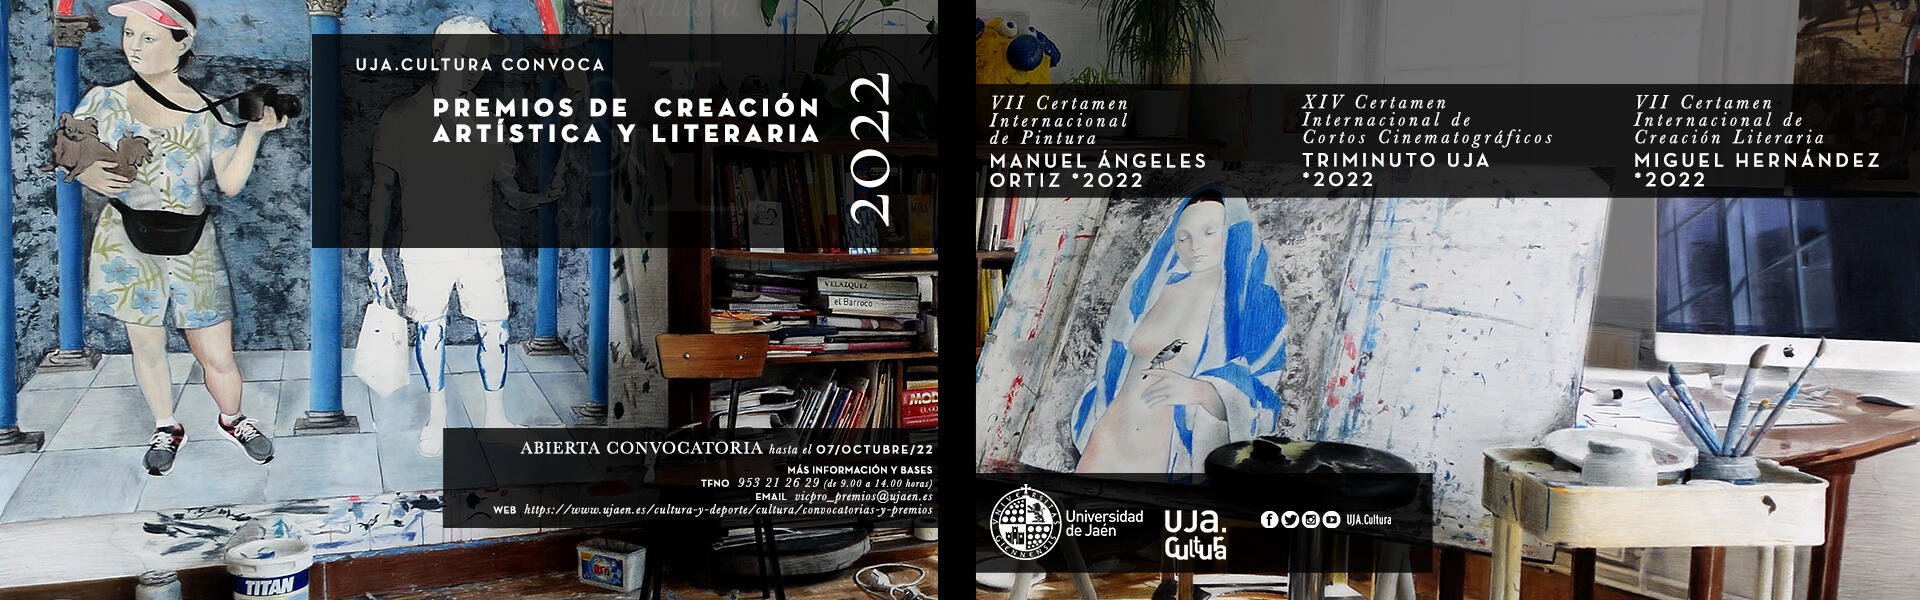 Banner Premios de Creación Artística y Literaria 2022